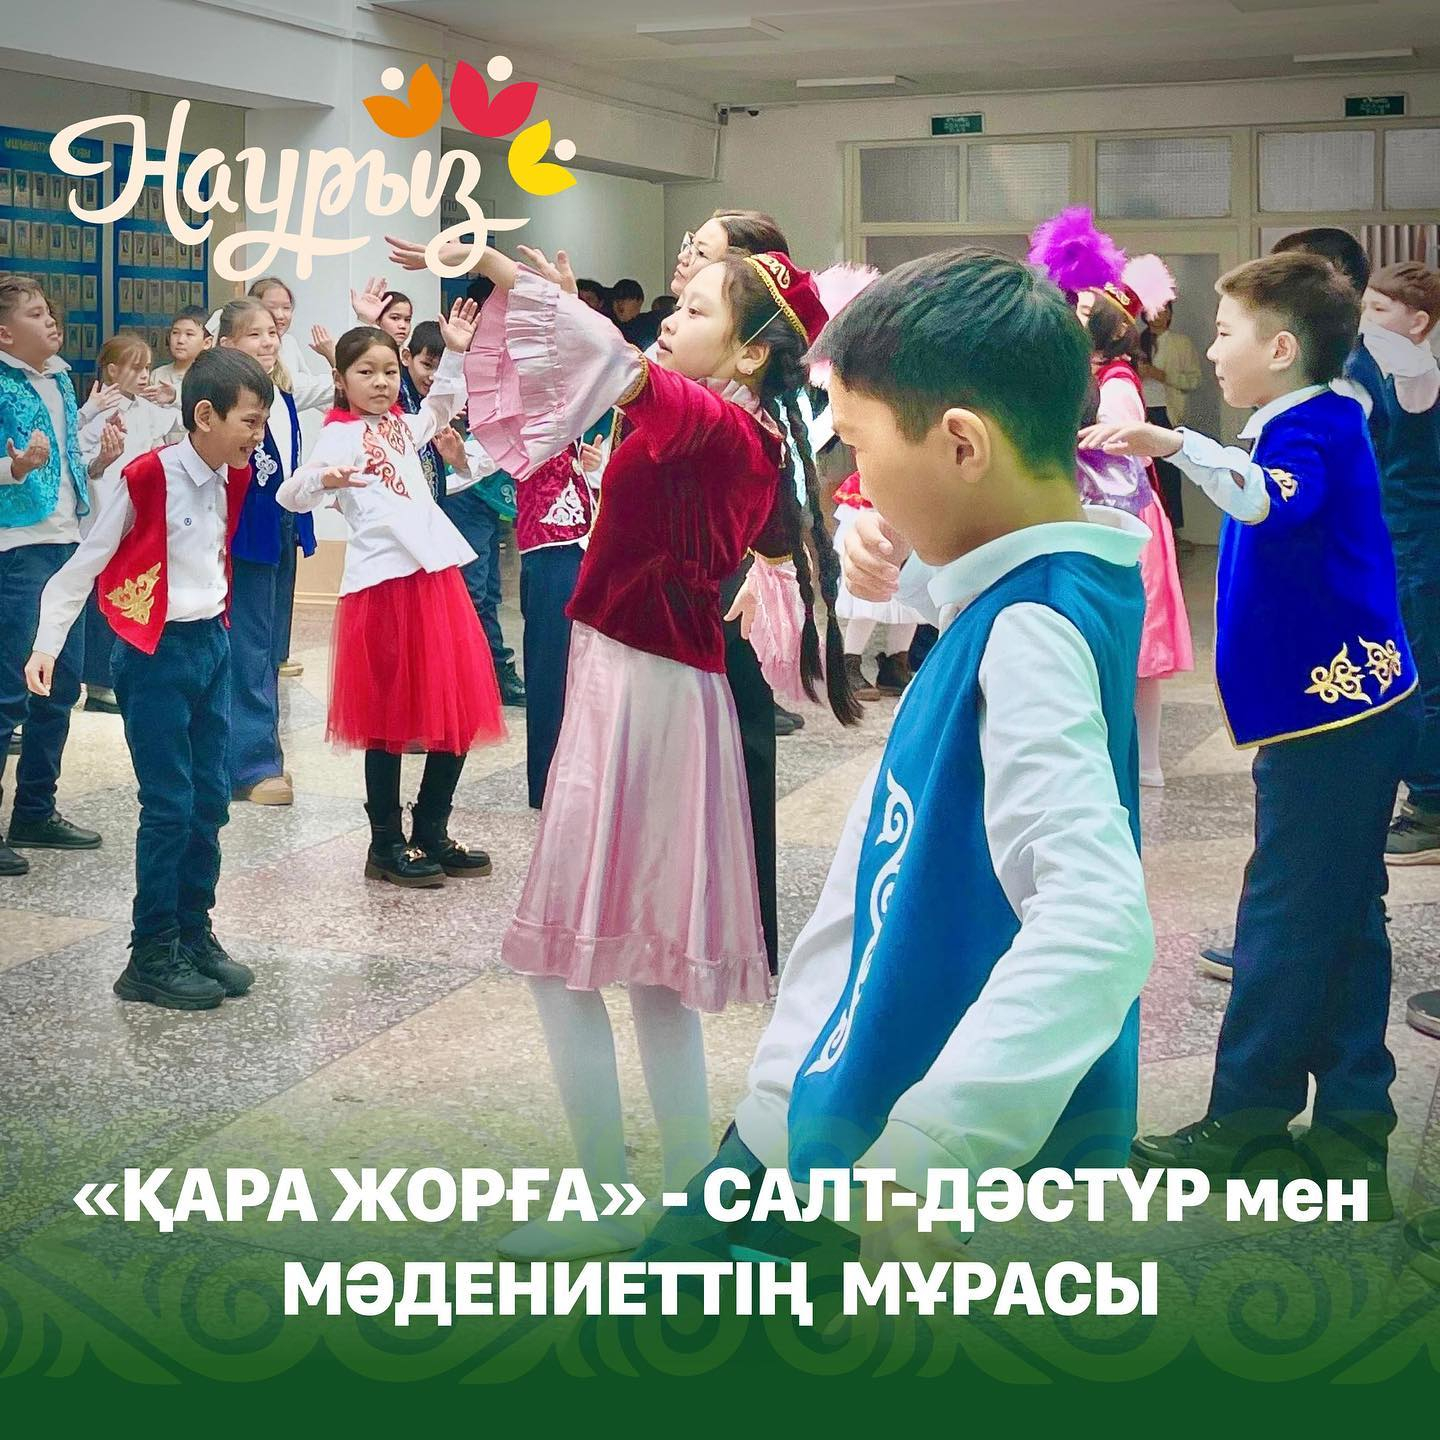 В рамках предметной Недели казахского языка и литературы в школе имени Мухтара Ауэзова состоялось красочное мероприятие «Ұлттық би».